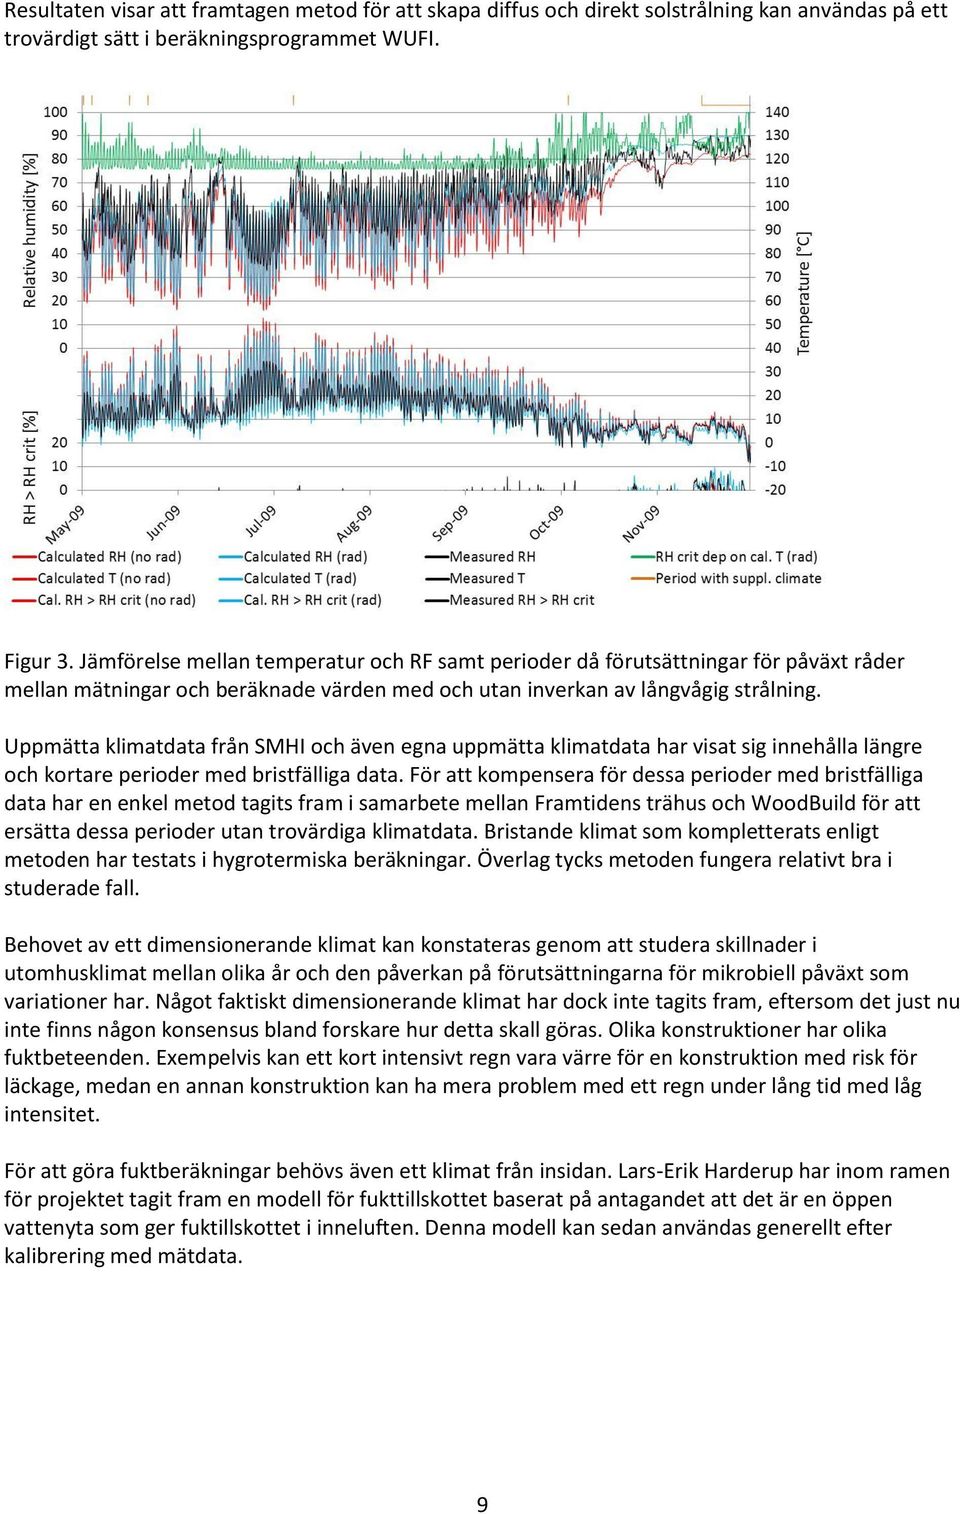 Uppmätta klimatdata från SMHI och även egna uppmätta klimatdata har visat sig innehålla längre och kortare perioder med bristfälliga data.